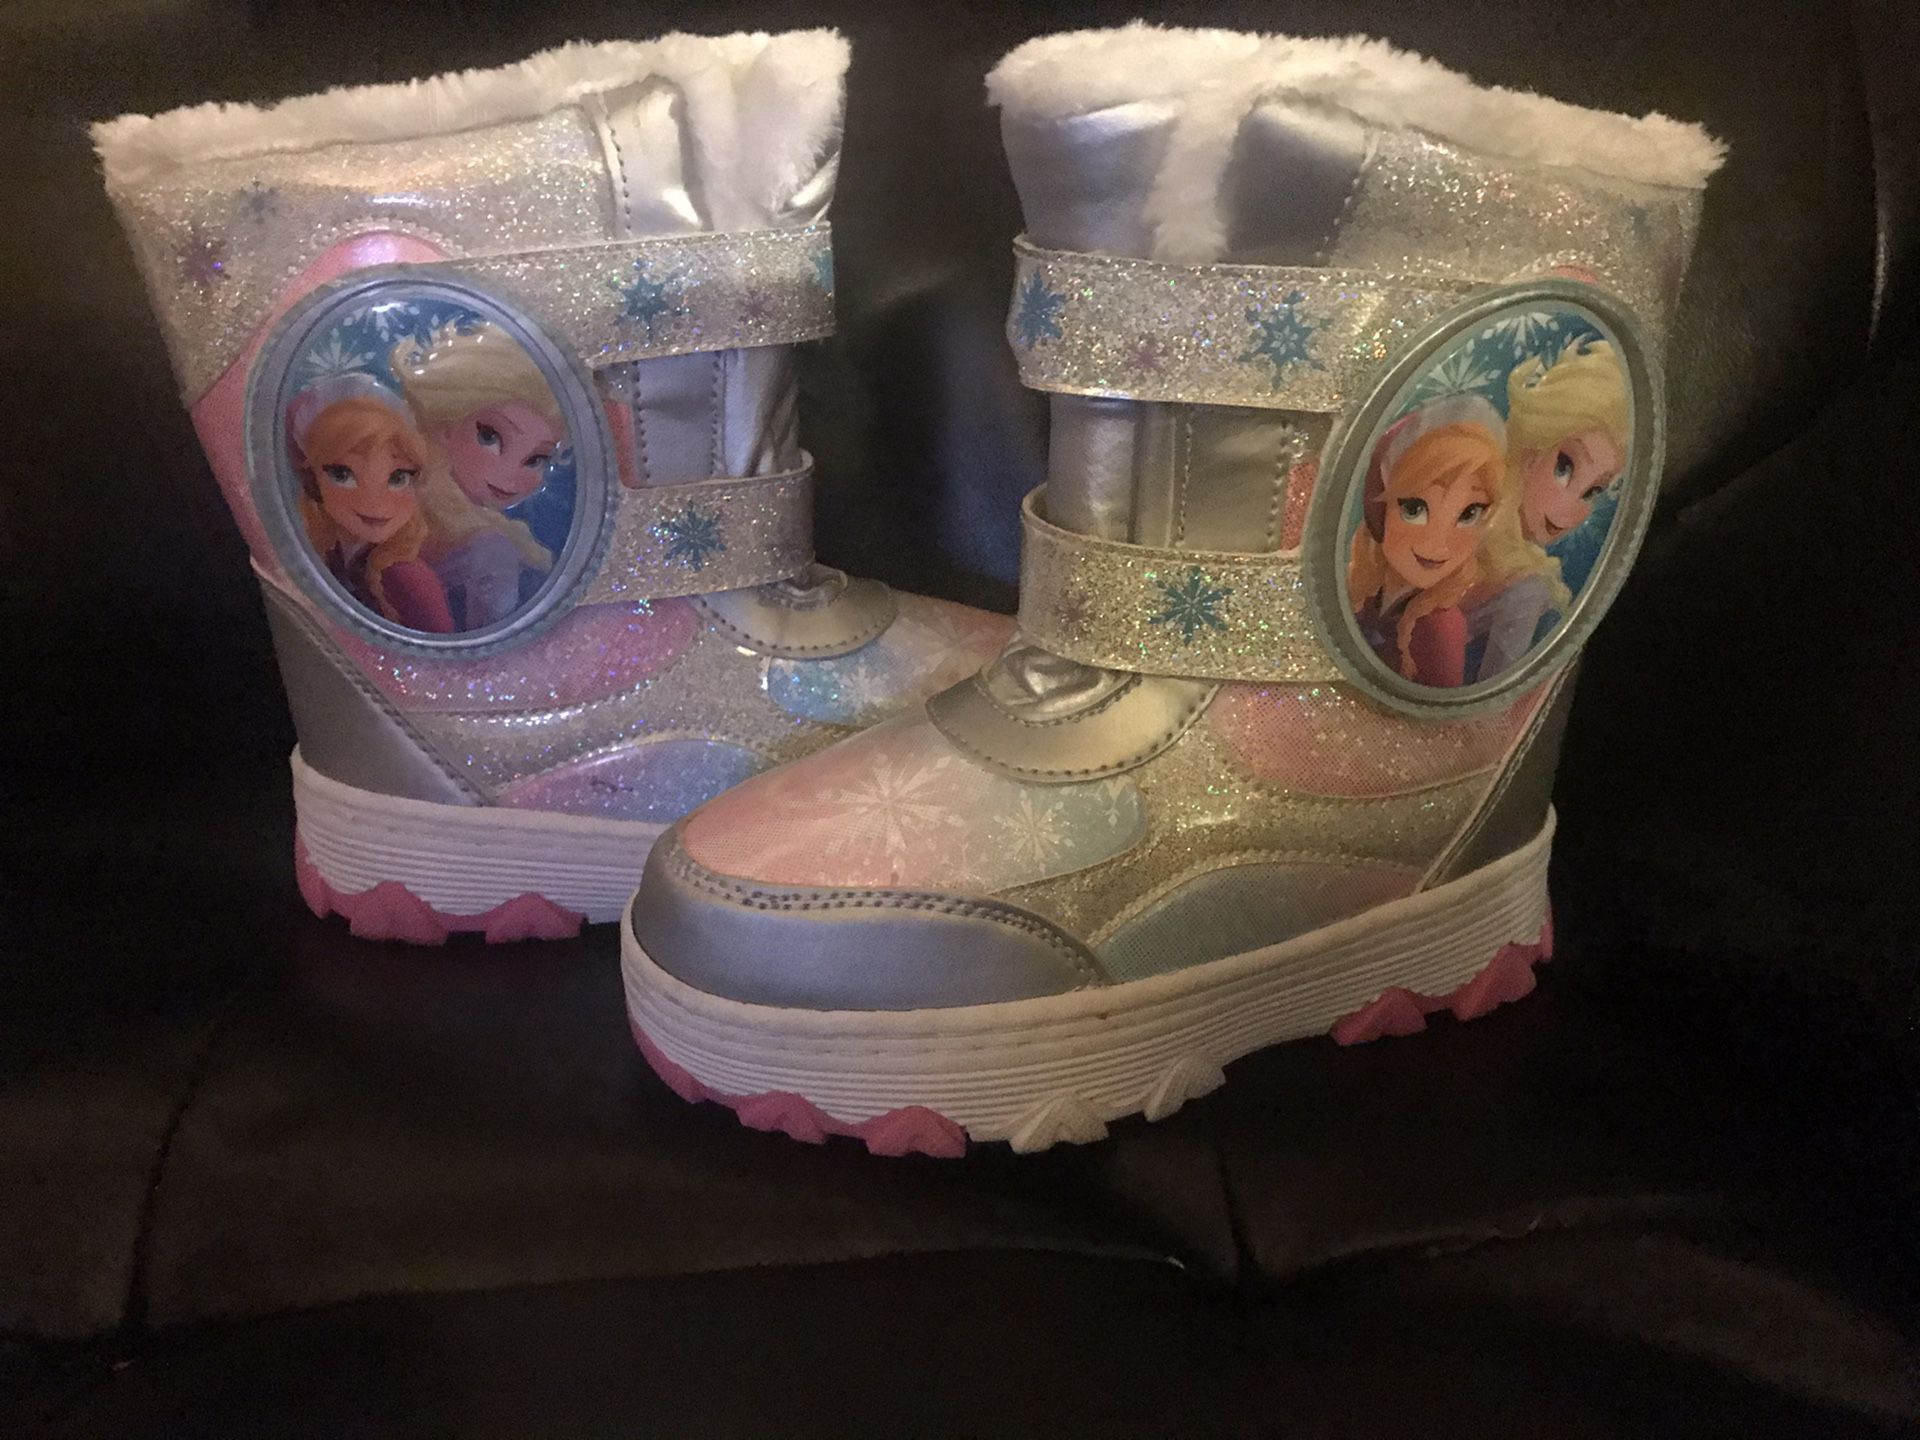 New frozen winter boots